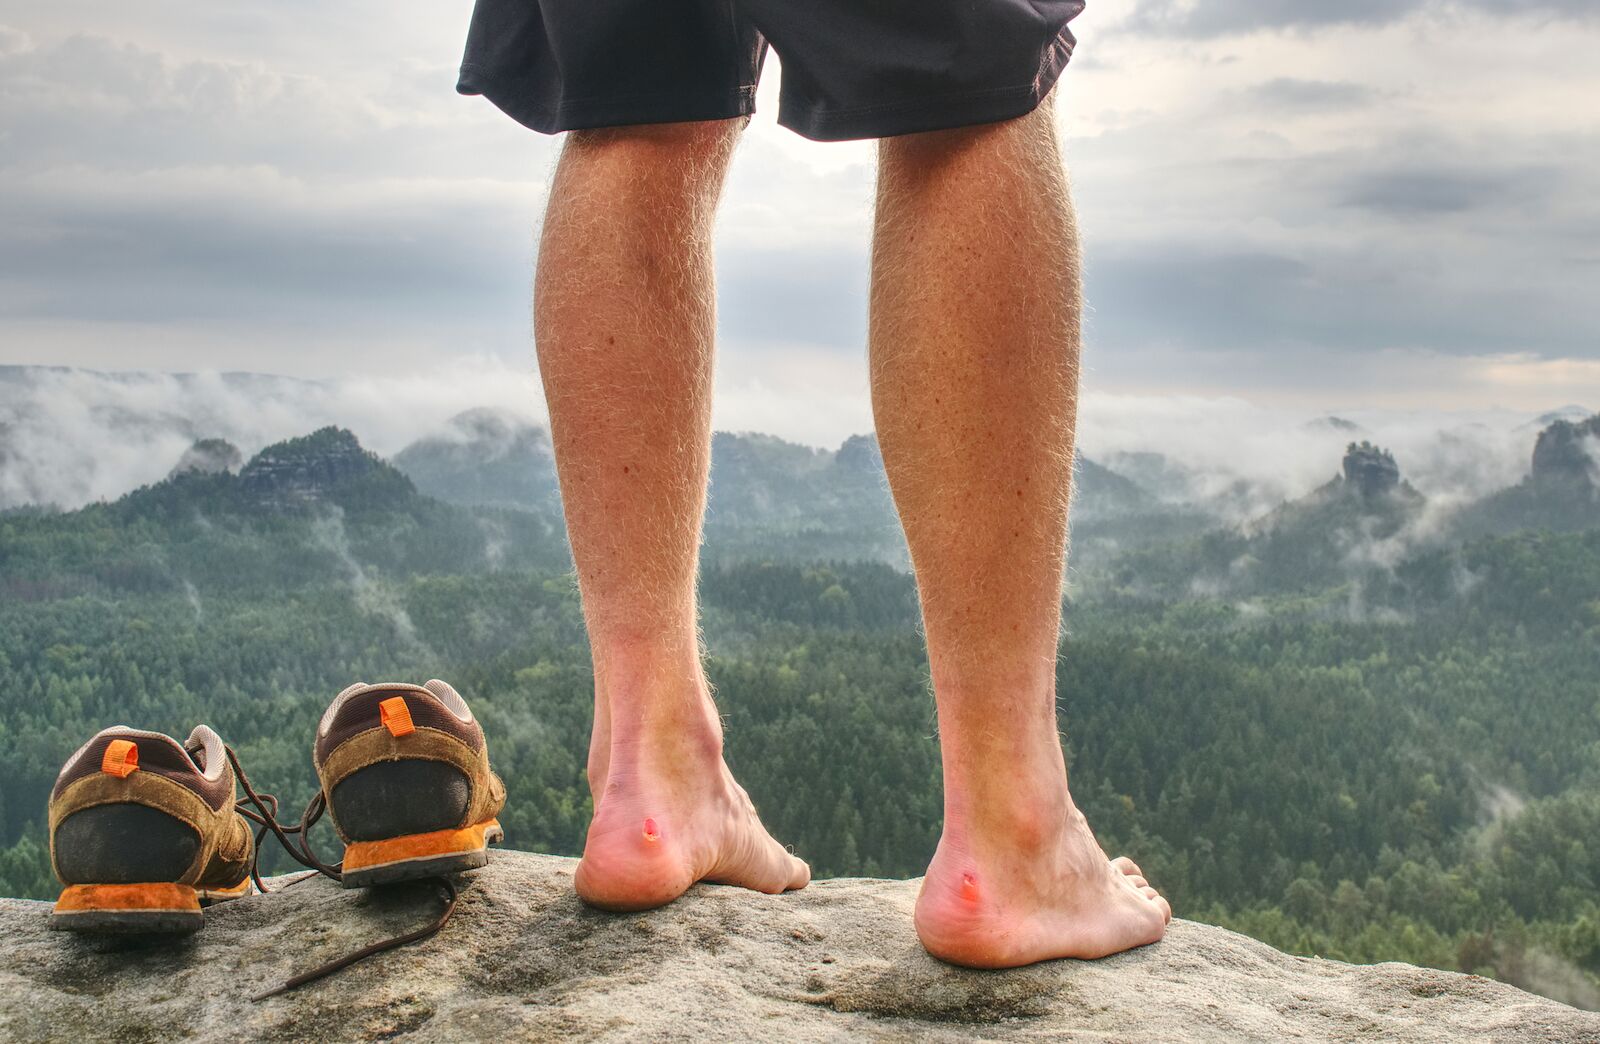 blisters on feet - beginner hiking tips